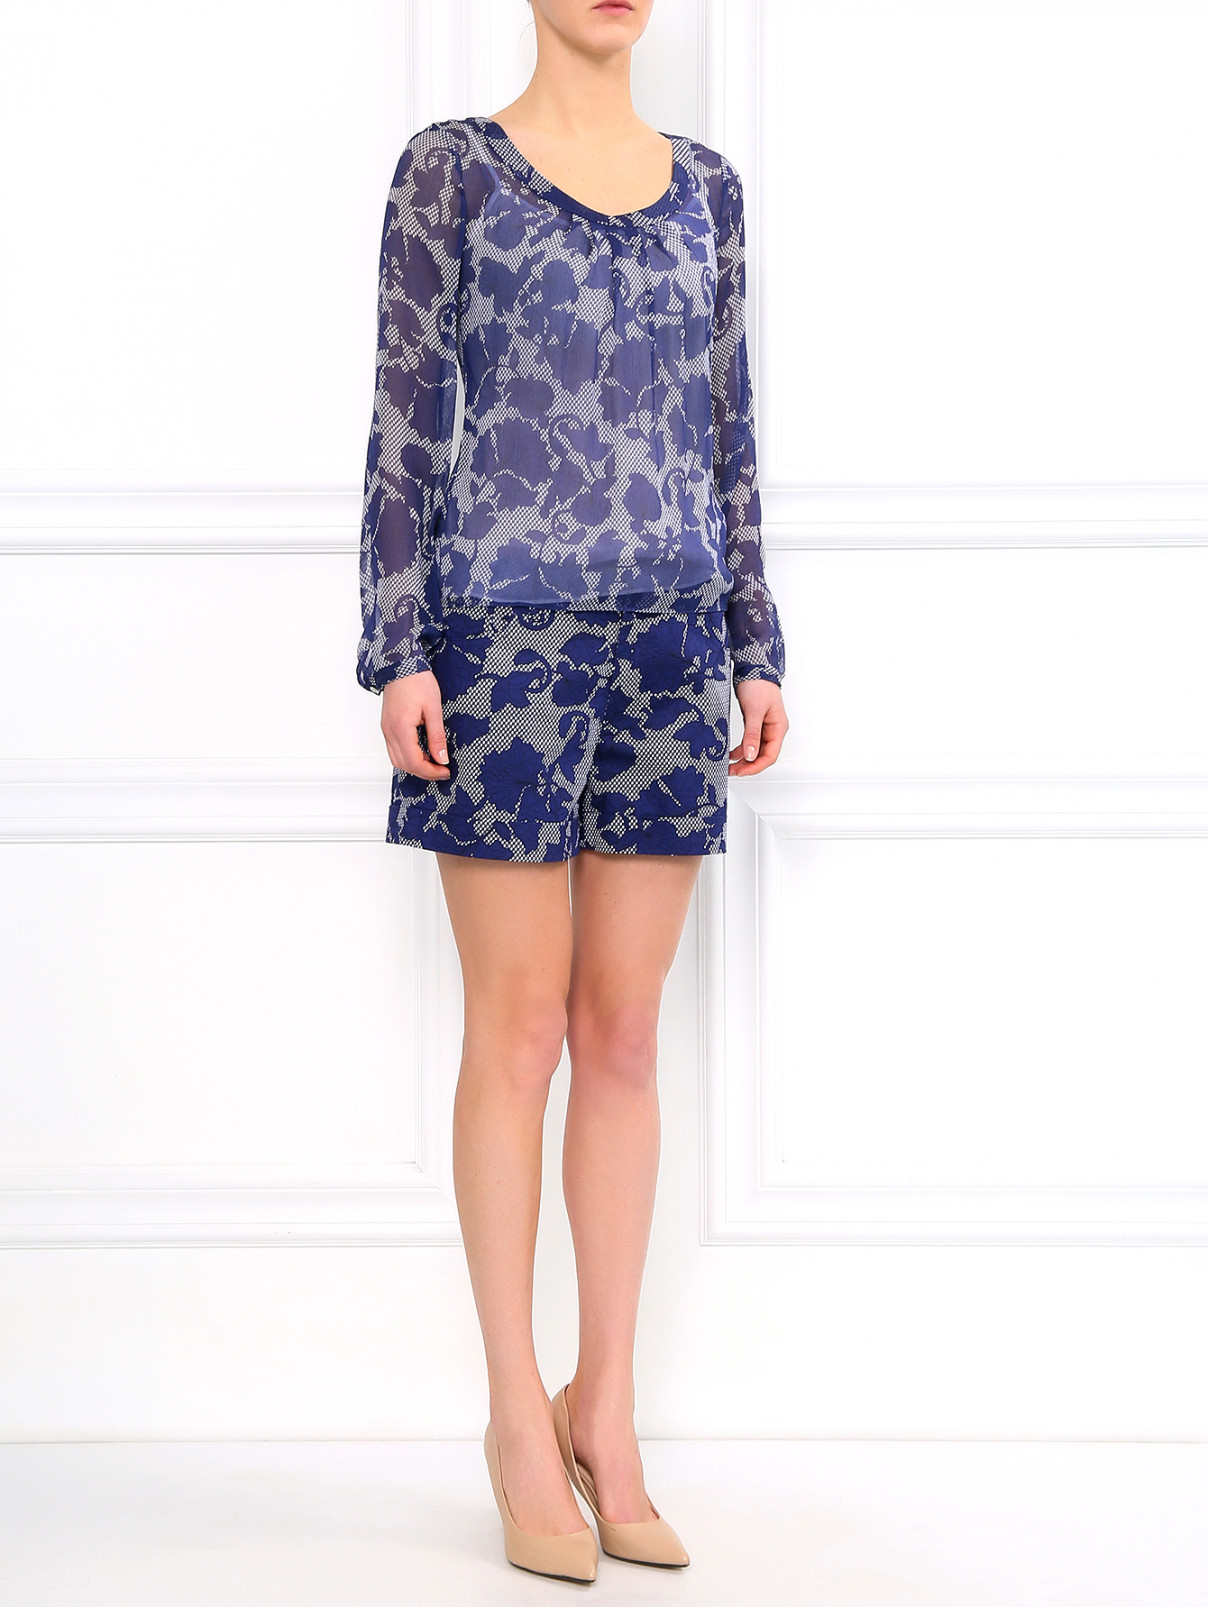 Шелковая блуза с подкладом Armani Jeans  –  Модель Общий вид  – Цвет:  Синий